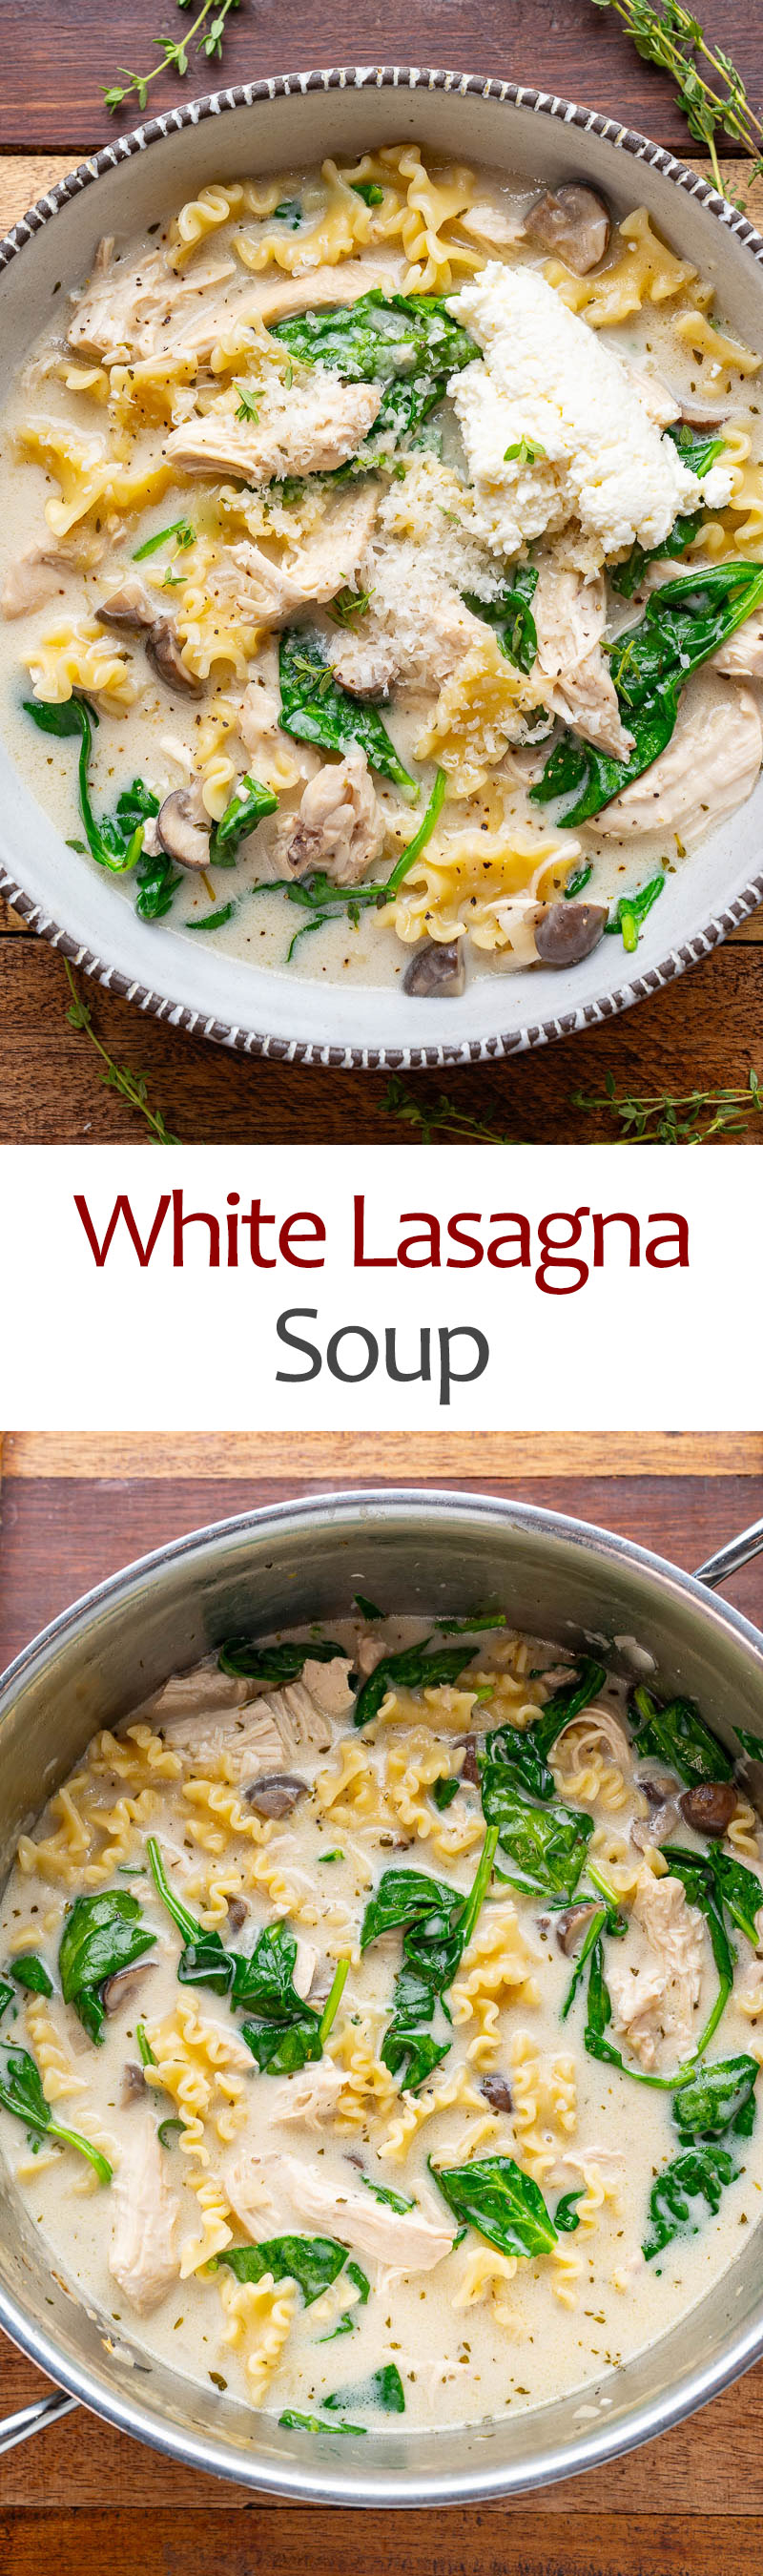 White Lasagna Soup